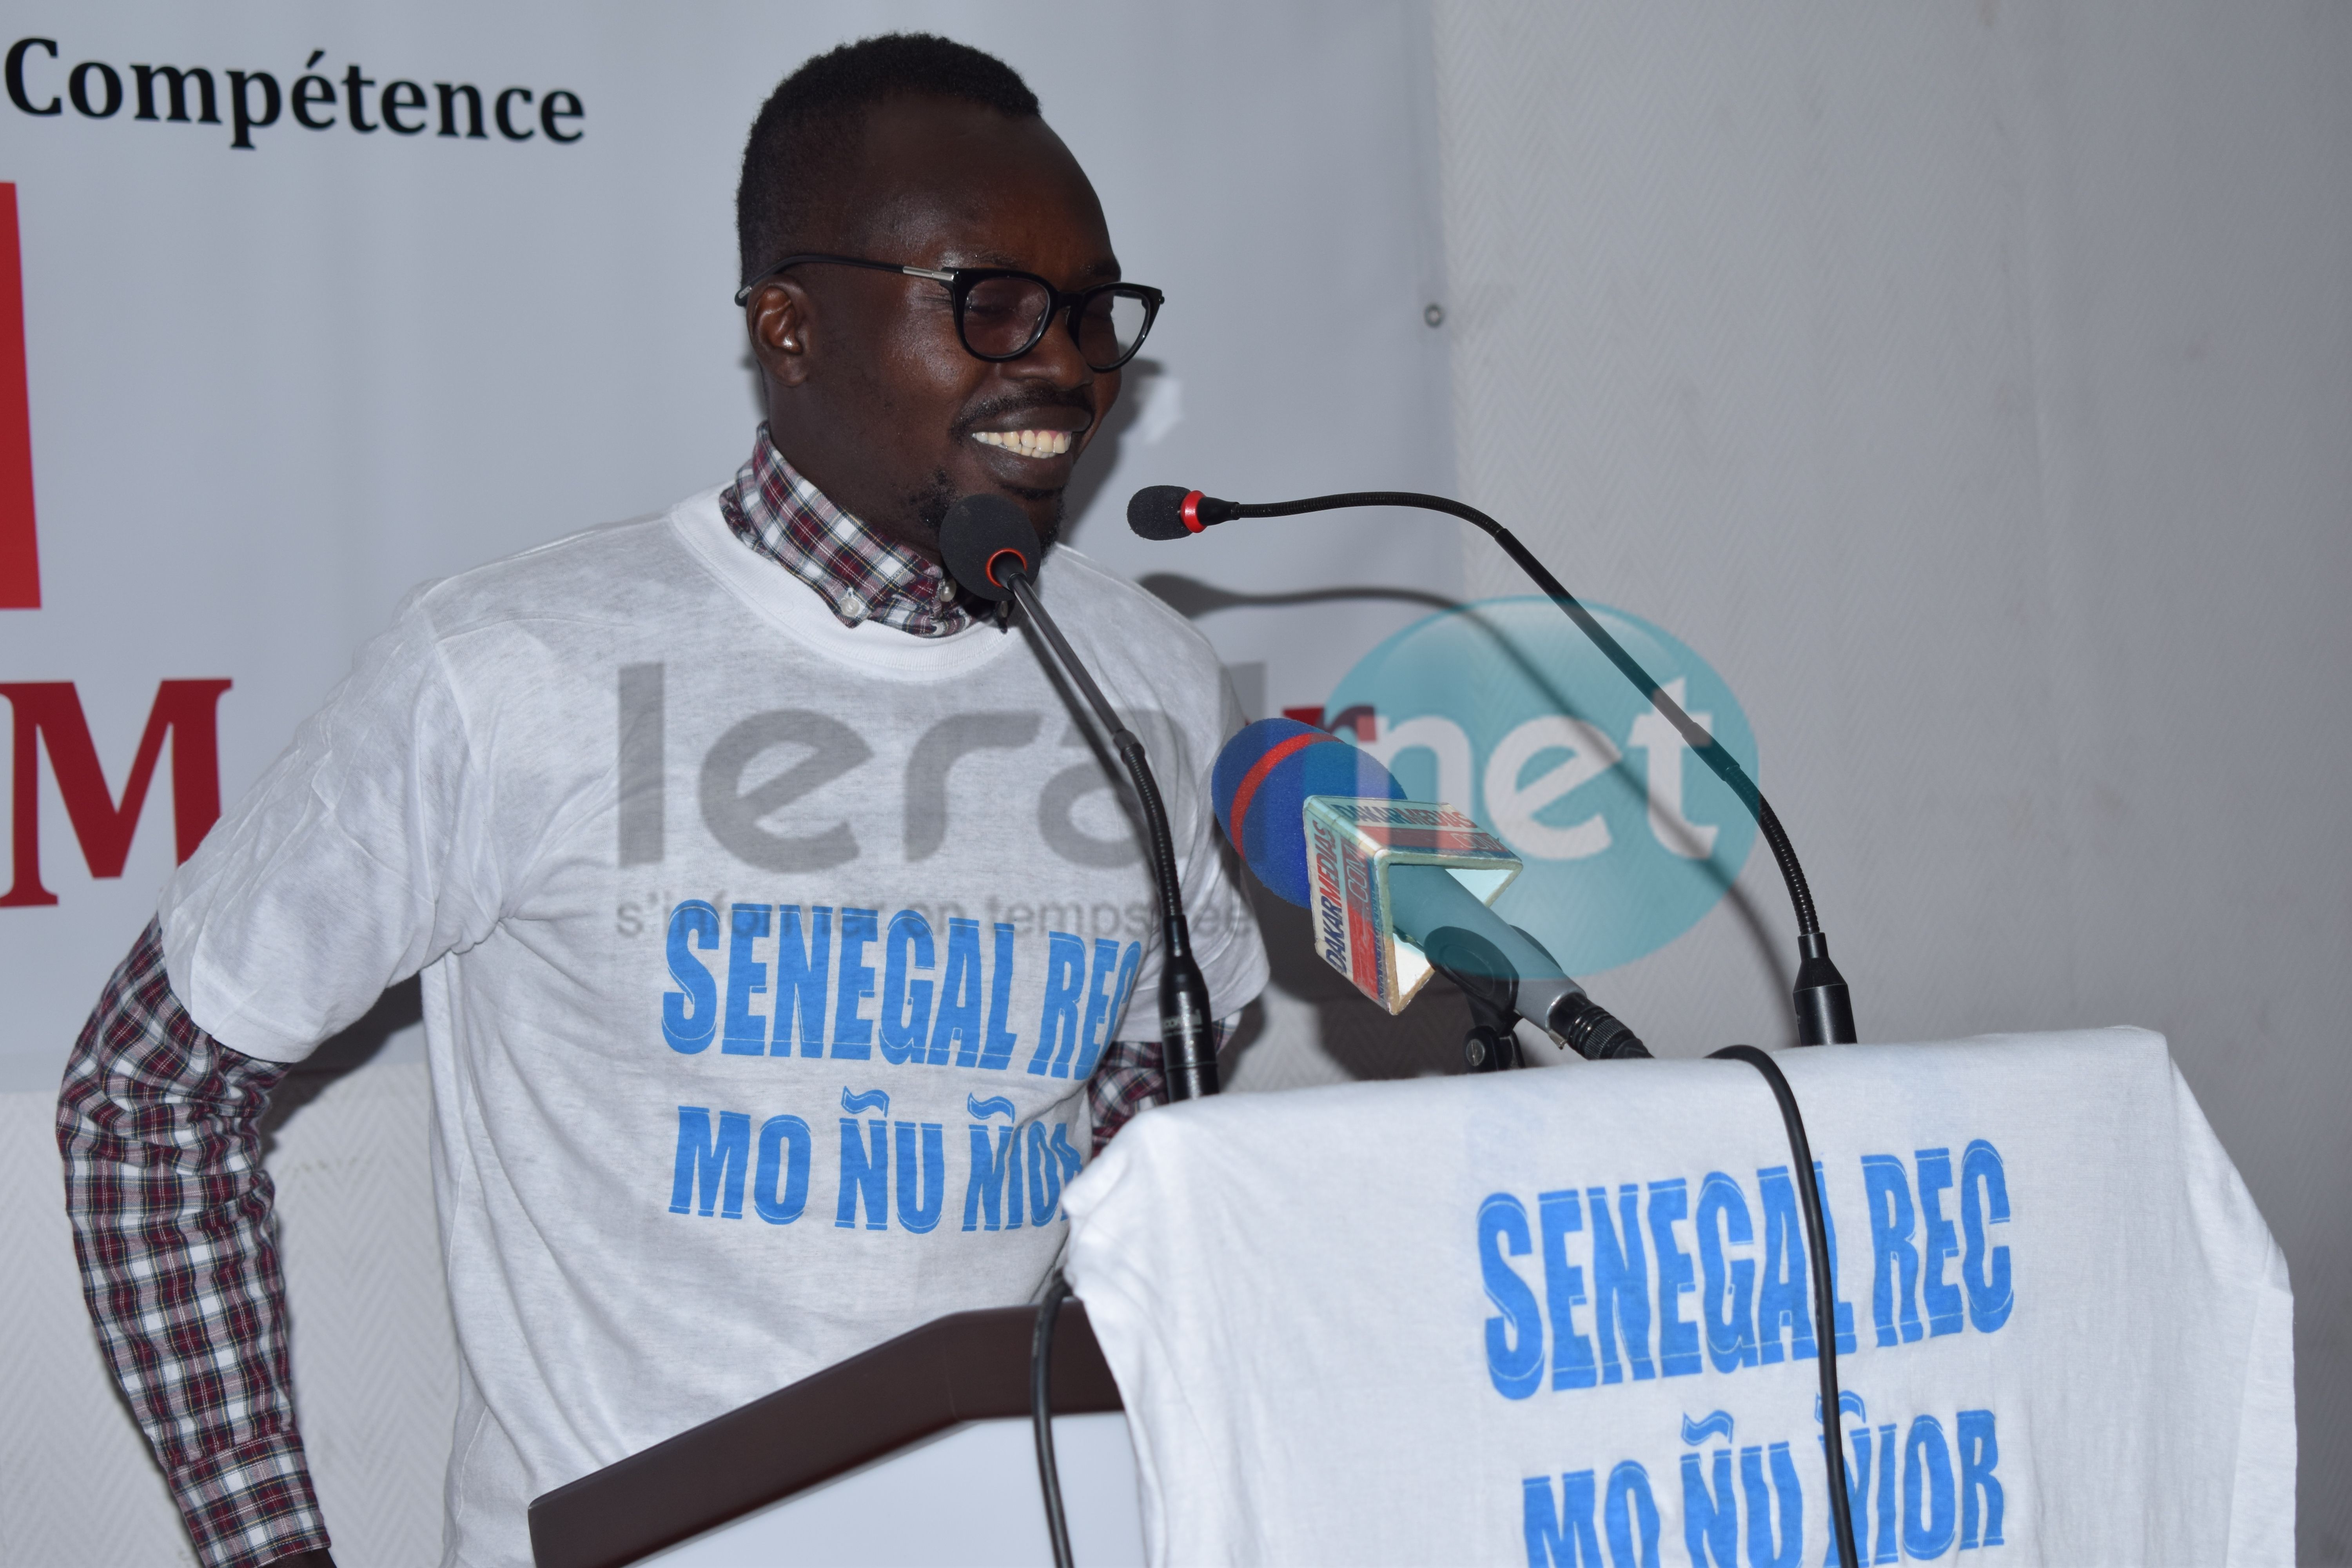 Le mouvement politique, «Senegaal Rec Mo Nior» lancé par l’écrivain Pape Mactar Diallo et ses camarades 